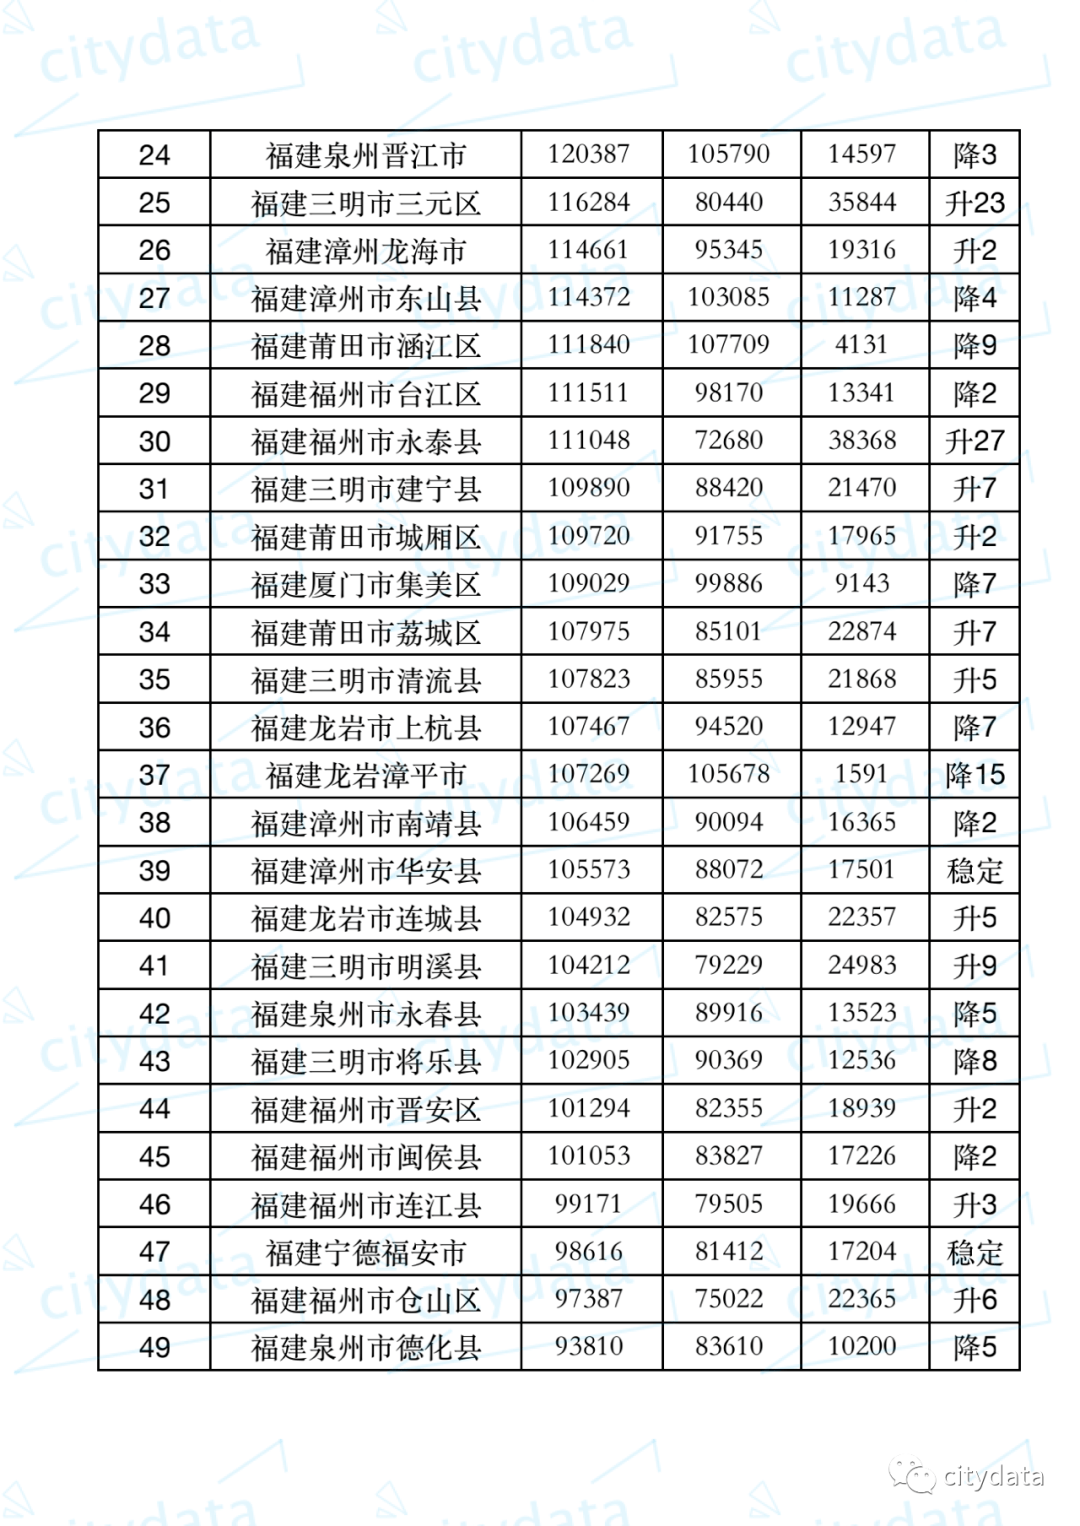 福州2019年gdp_2019年度福建省地级市人均GDP排名厦门市超14万元居全省第一